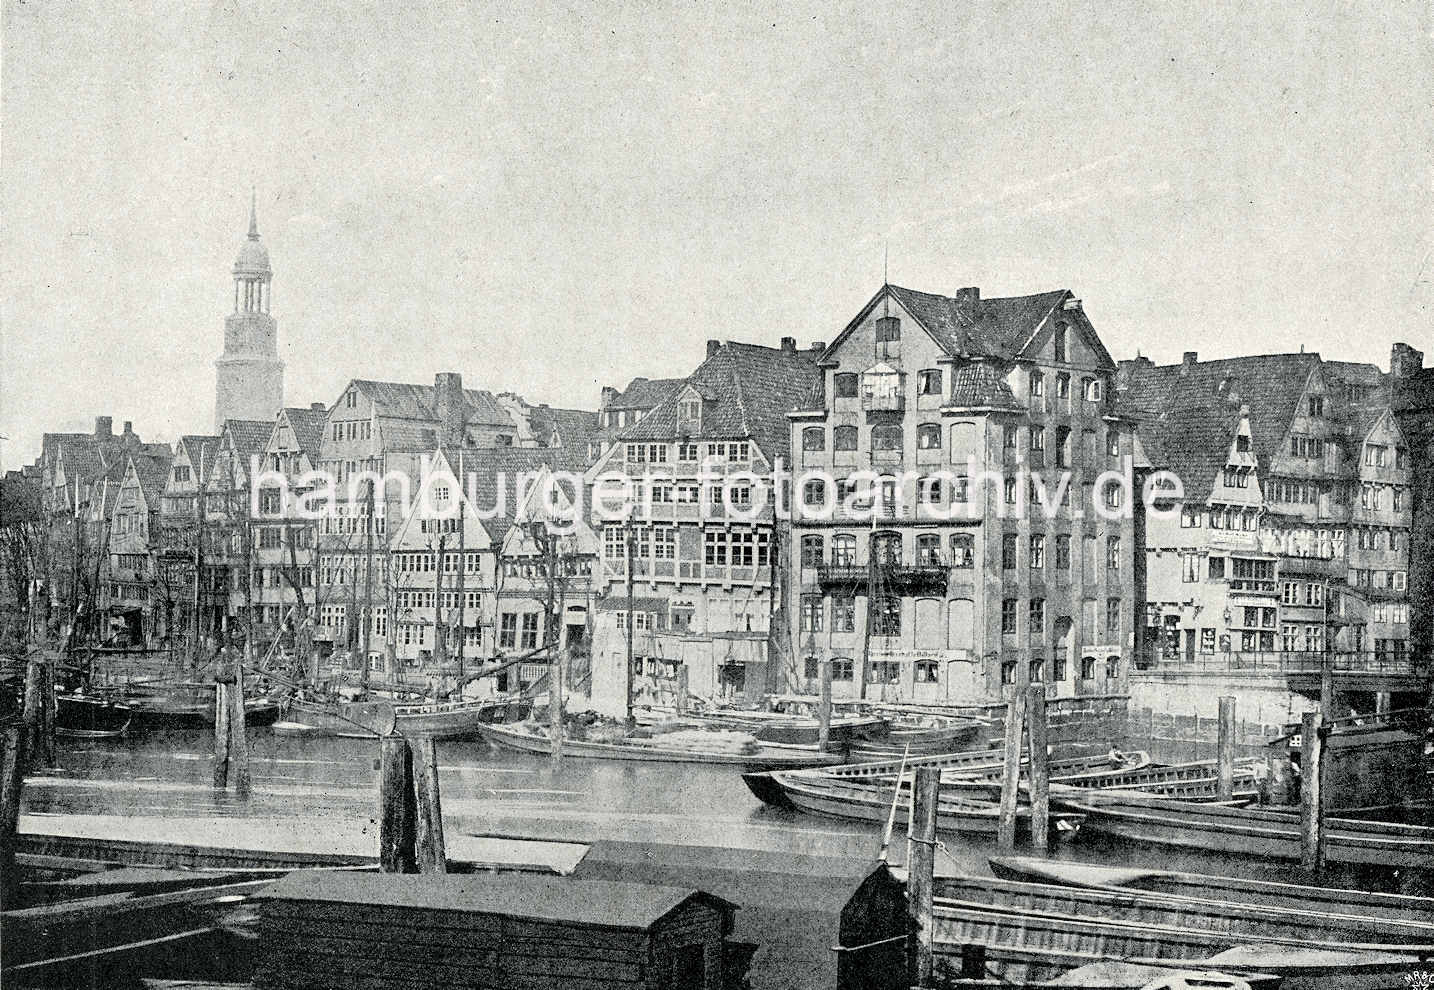 X002149 Geschichte des Hamburger Hafens in Bildern; Blick über den Binnenhafen. | Binnenhafen - historisches Hafenbecken in der Hamburger Altstadt.